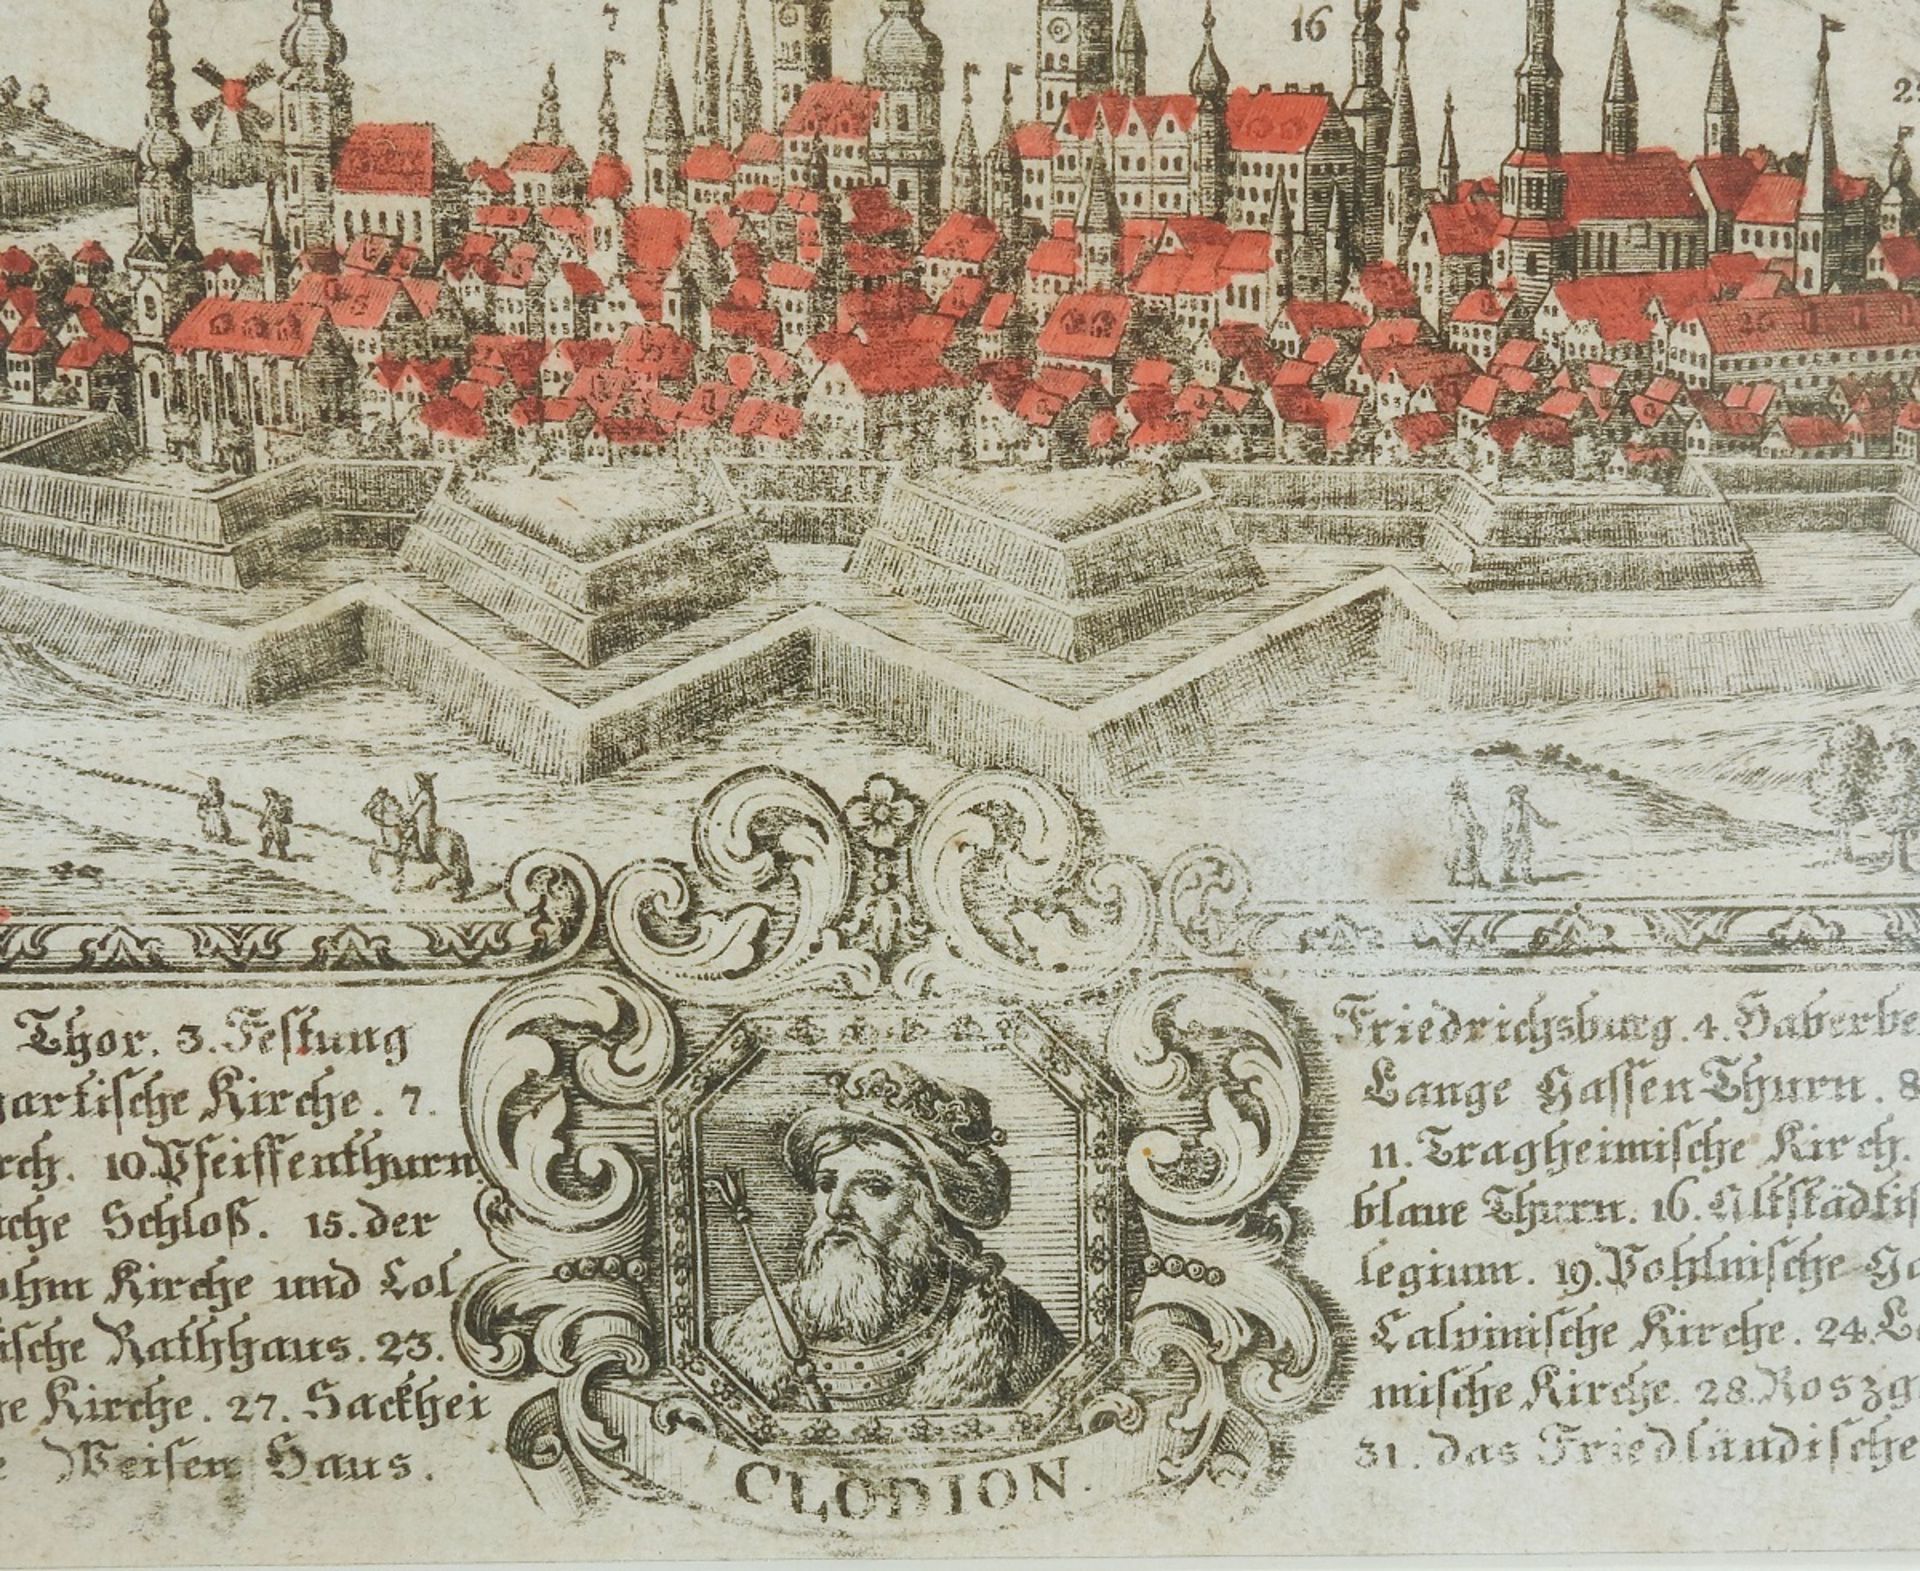 Vedute von Königsberg - Image 5 of 5